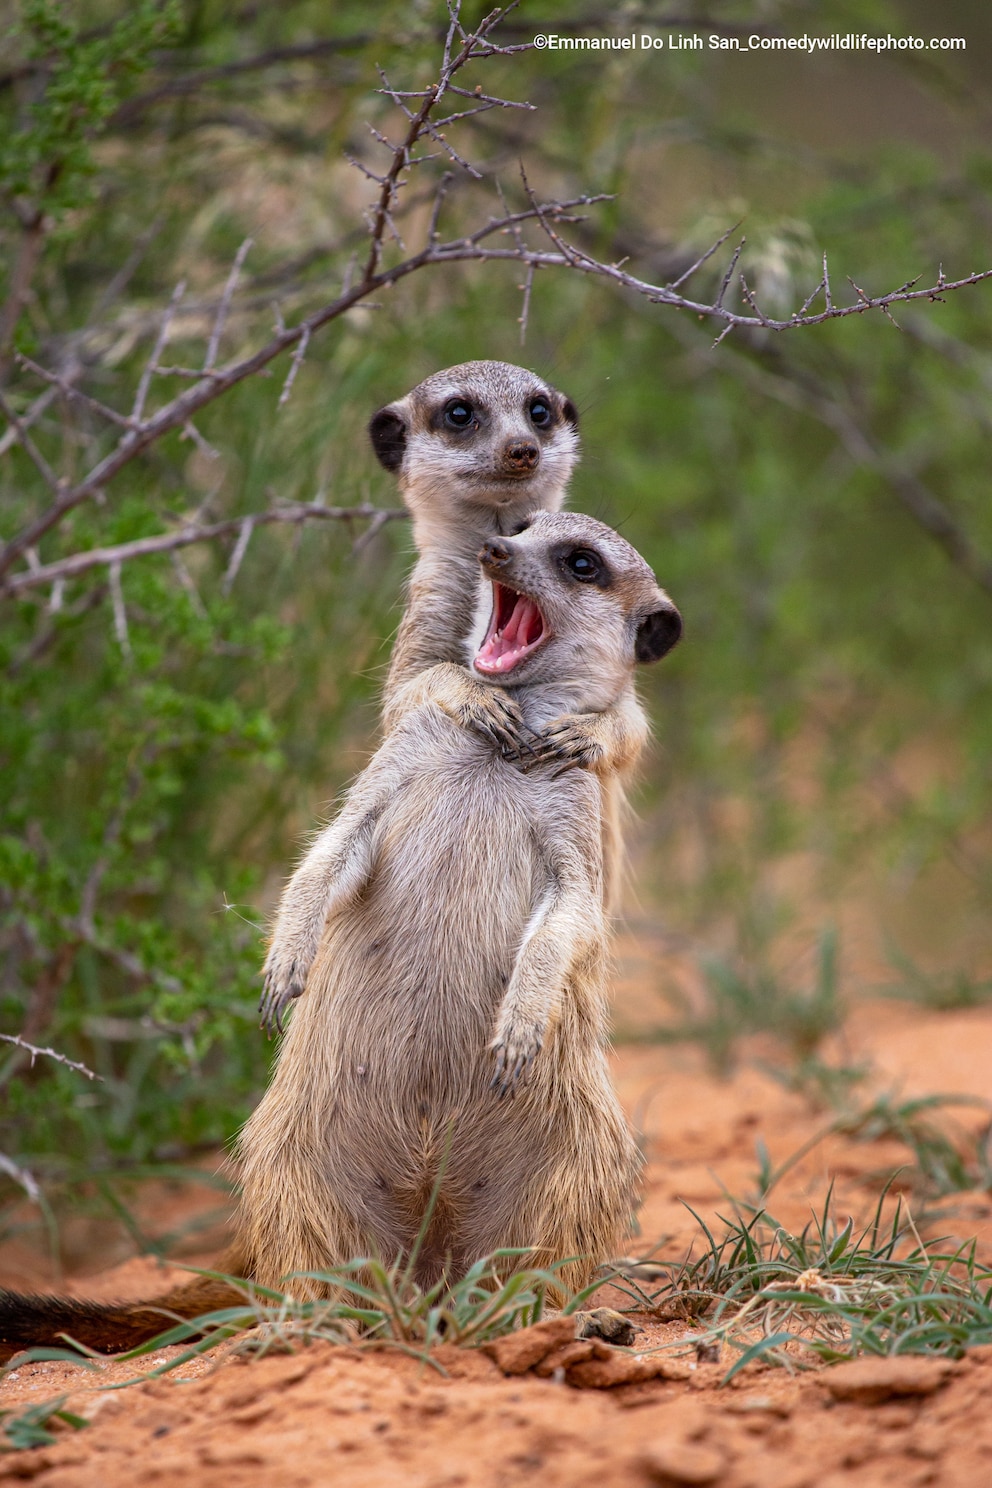 Zwei Erdmännchen spielen miteinander – Finalist des Comedy Wildlife Foto Awards 2022